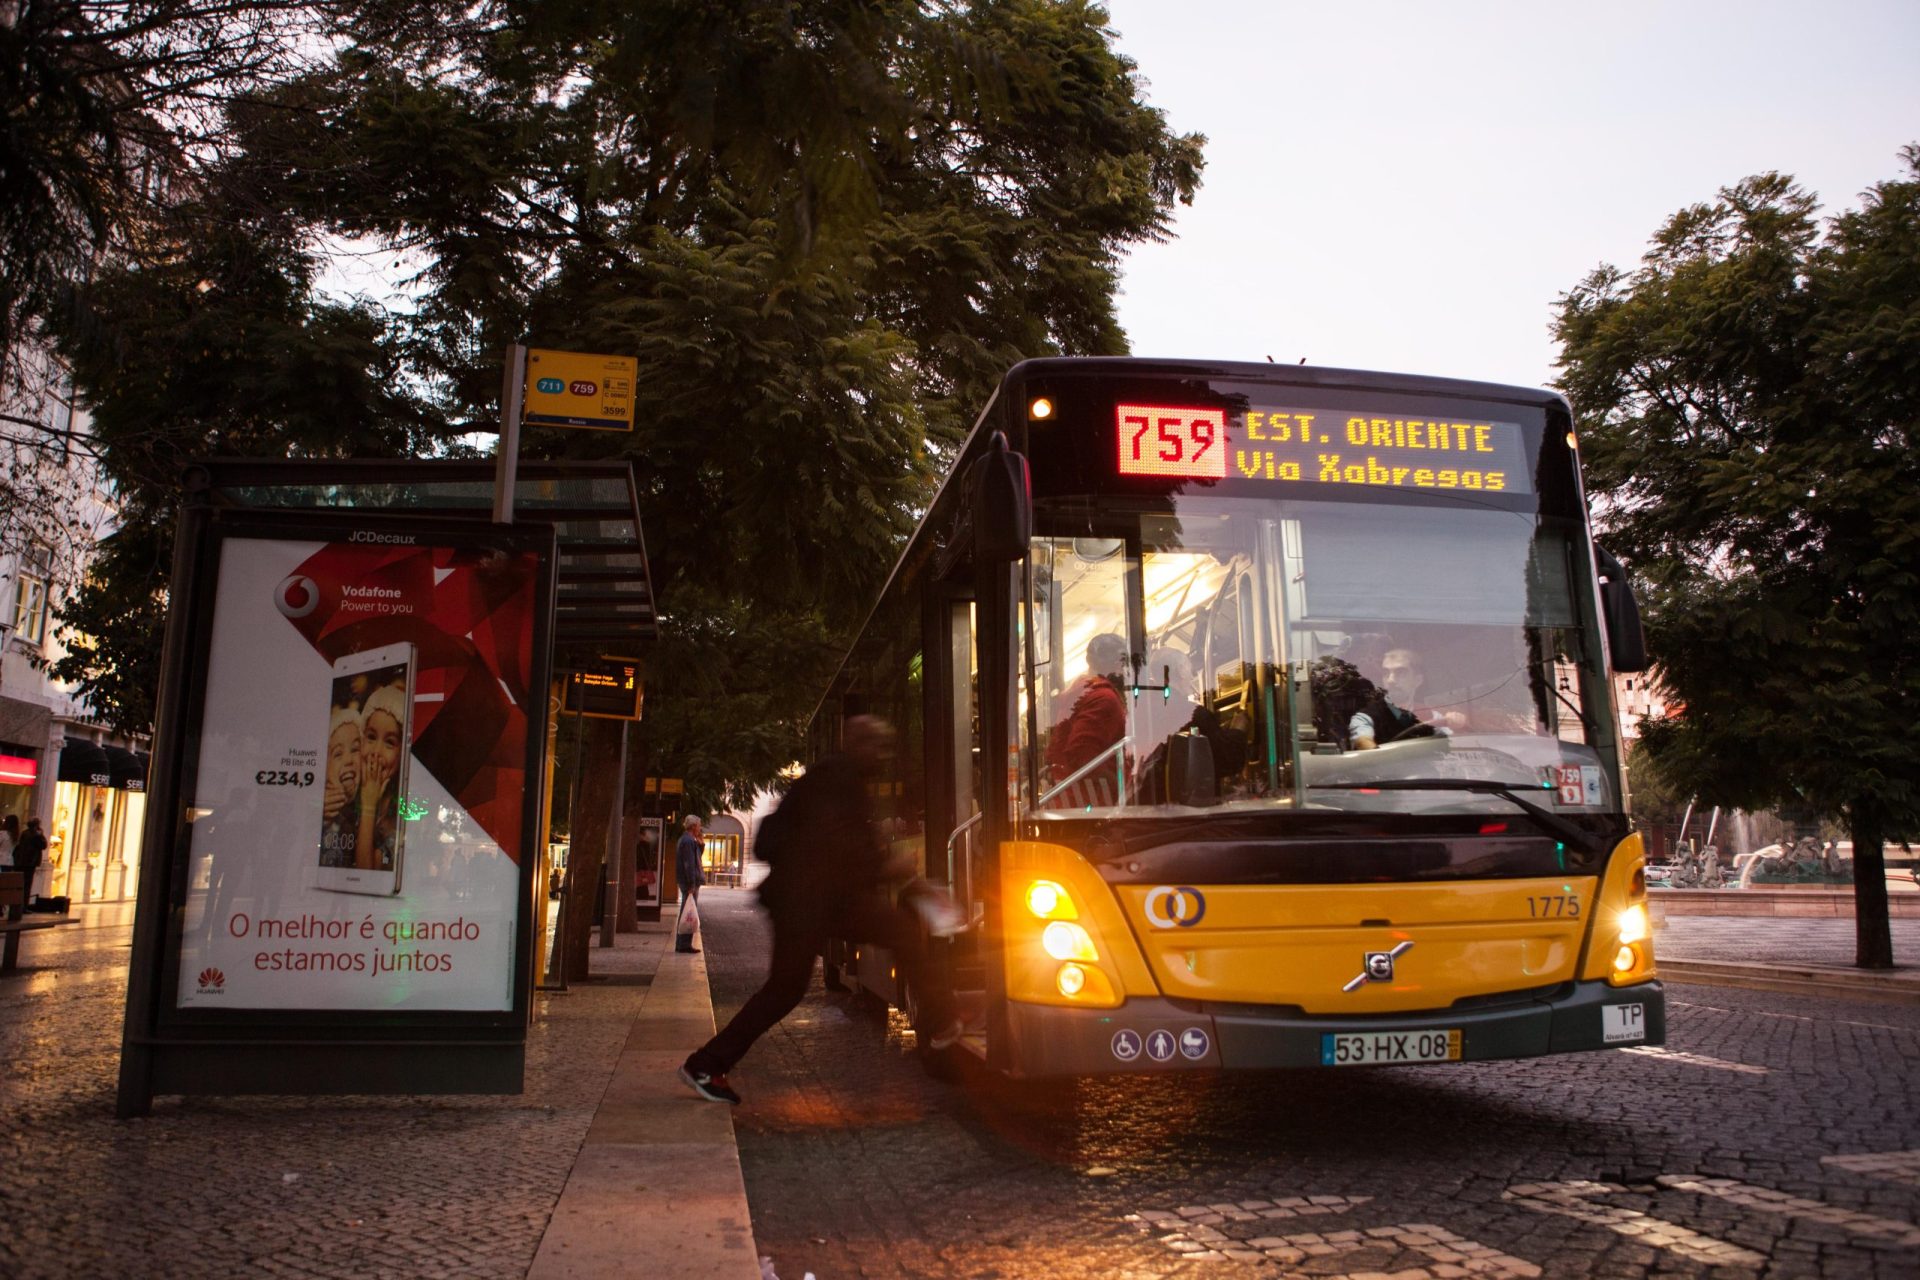 Carris vai ter 15 novos autocarros a circular em Lisboa a partir de sexta-feira